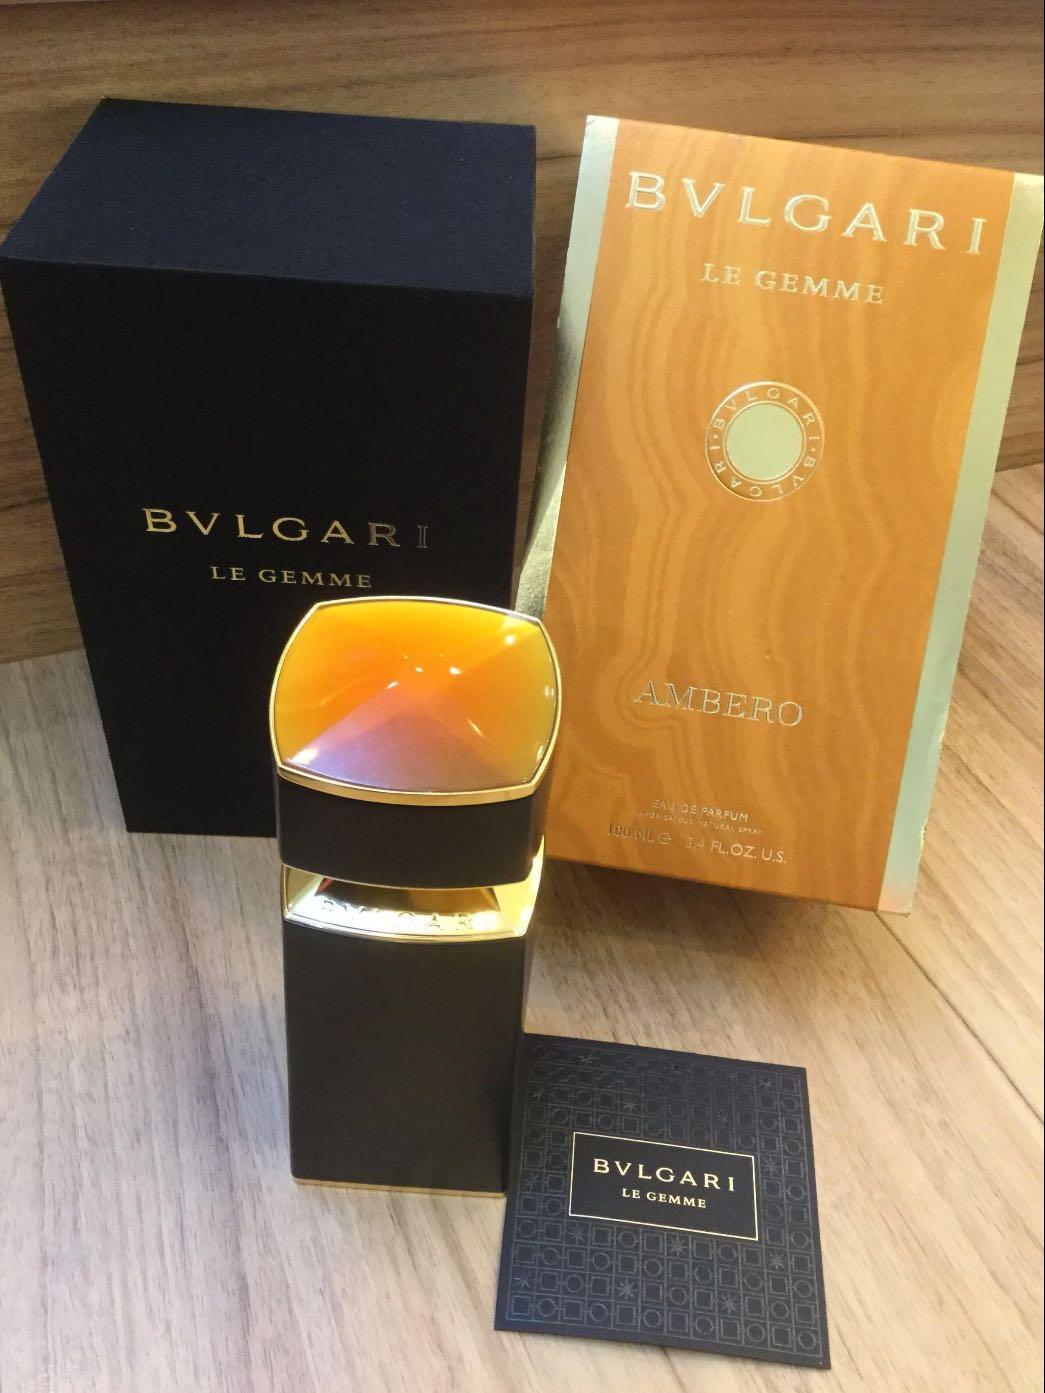 bvlgari ambero price